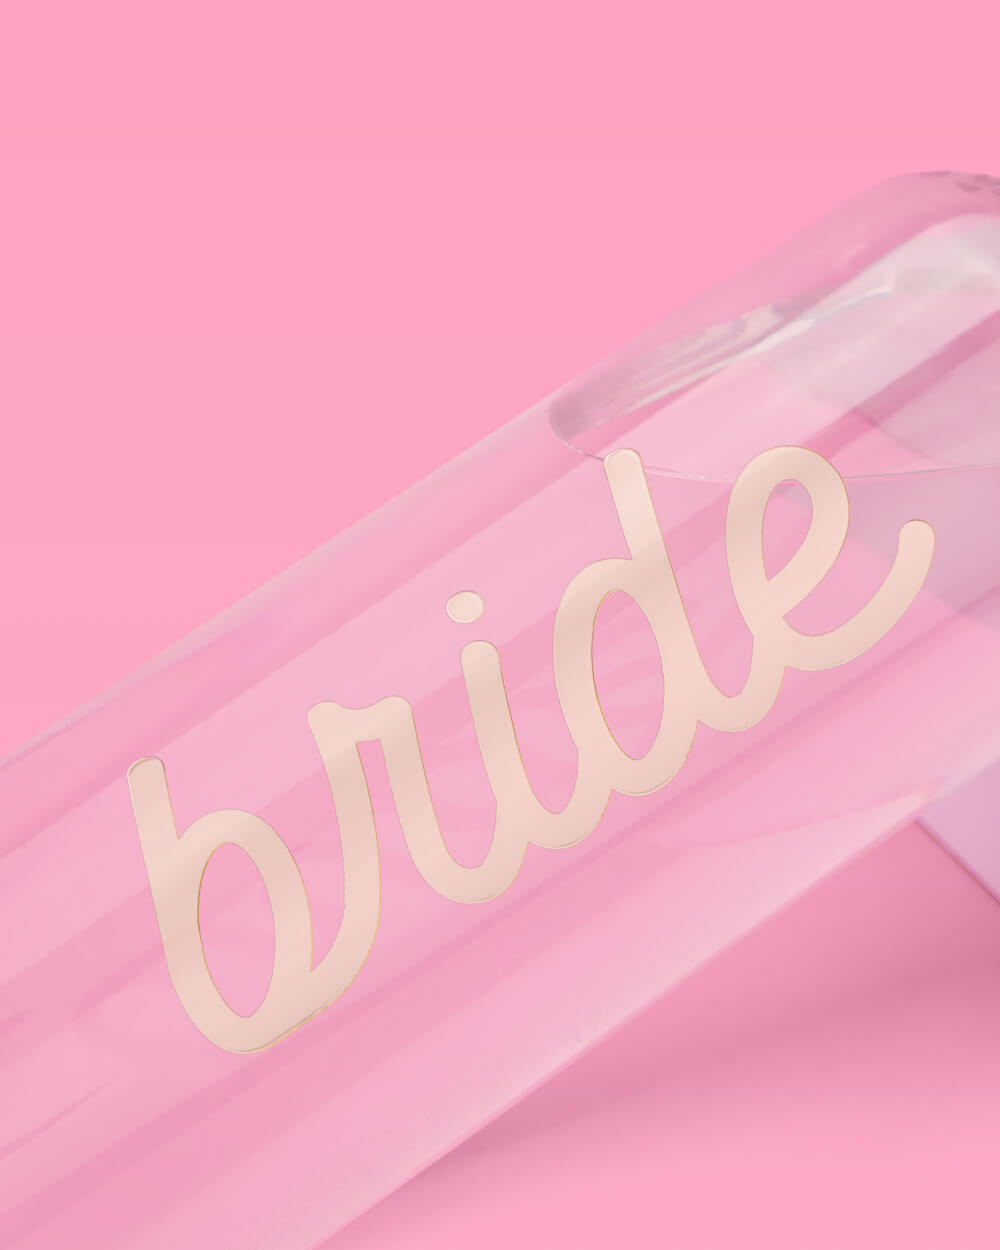 Bride Water Bottle - 16 oz water bottle